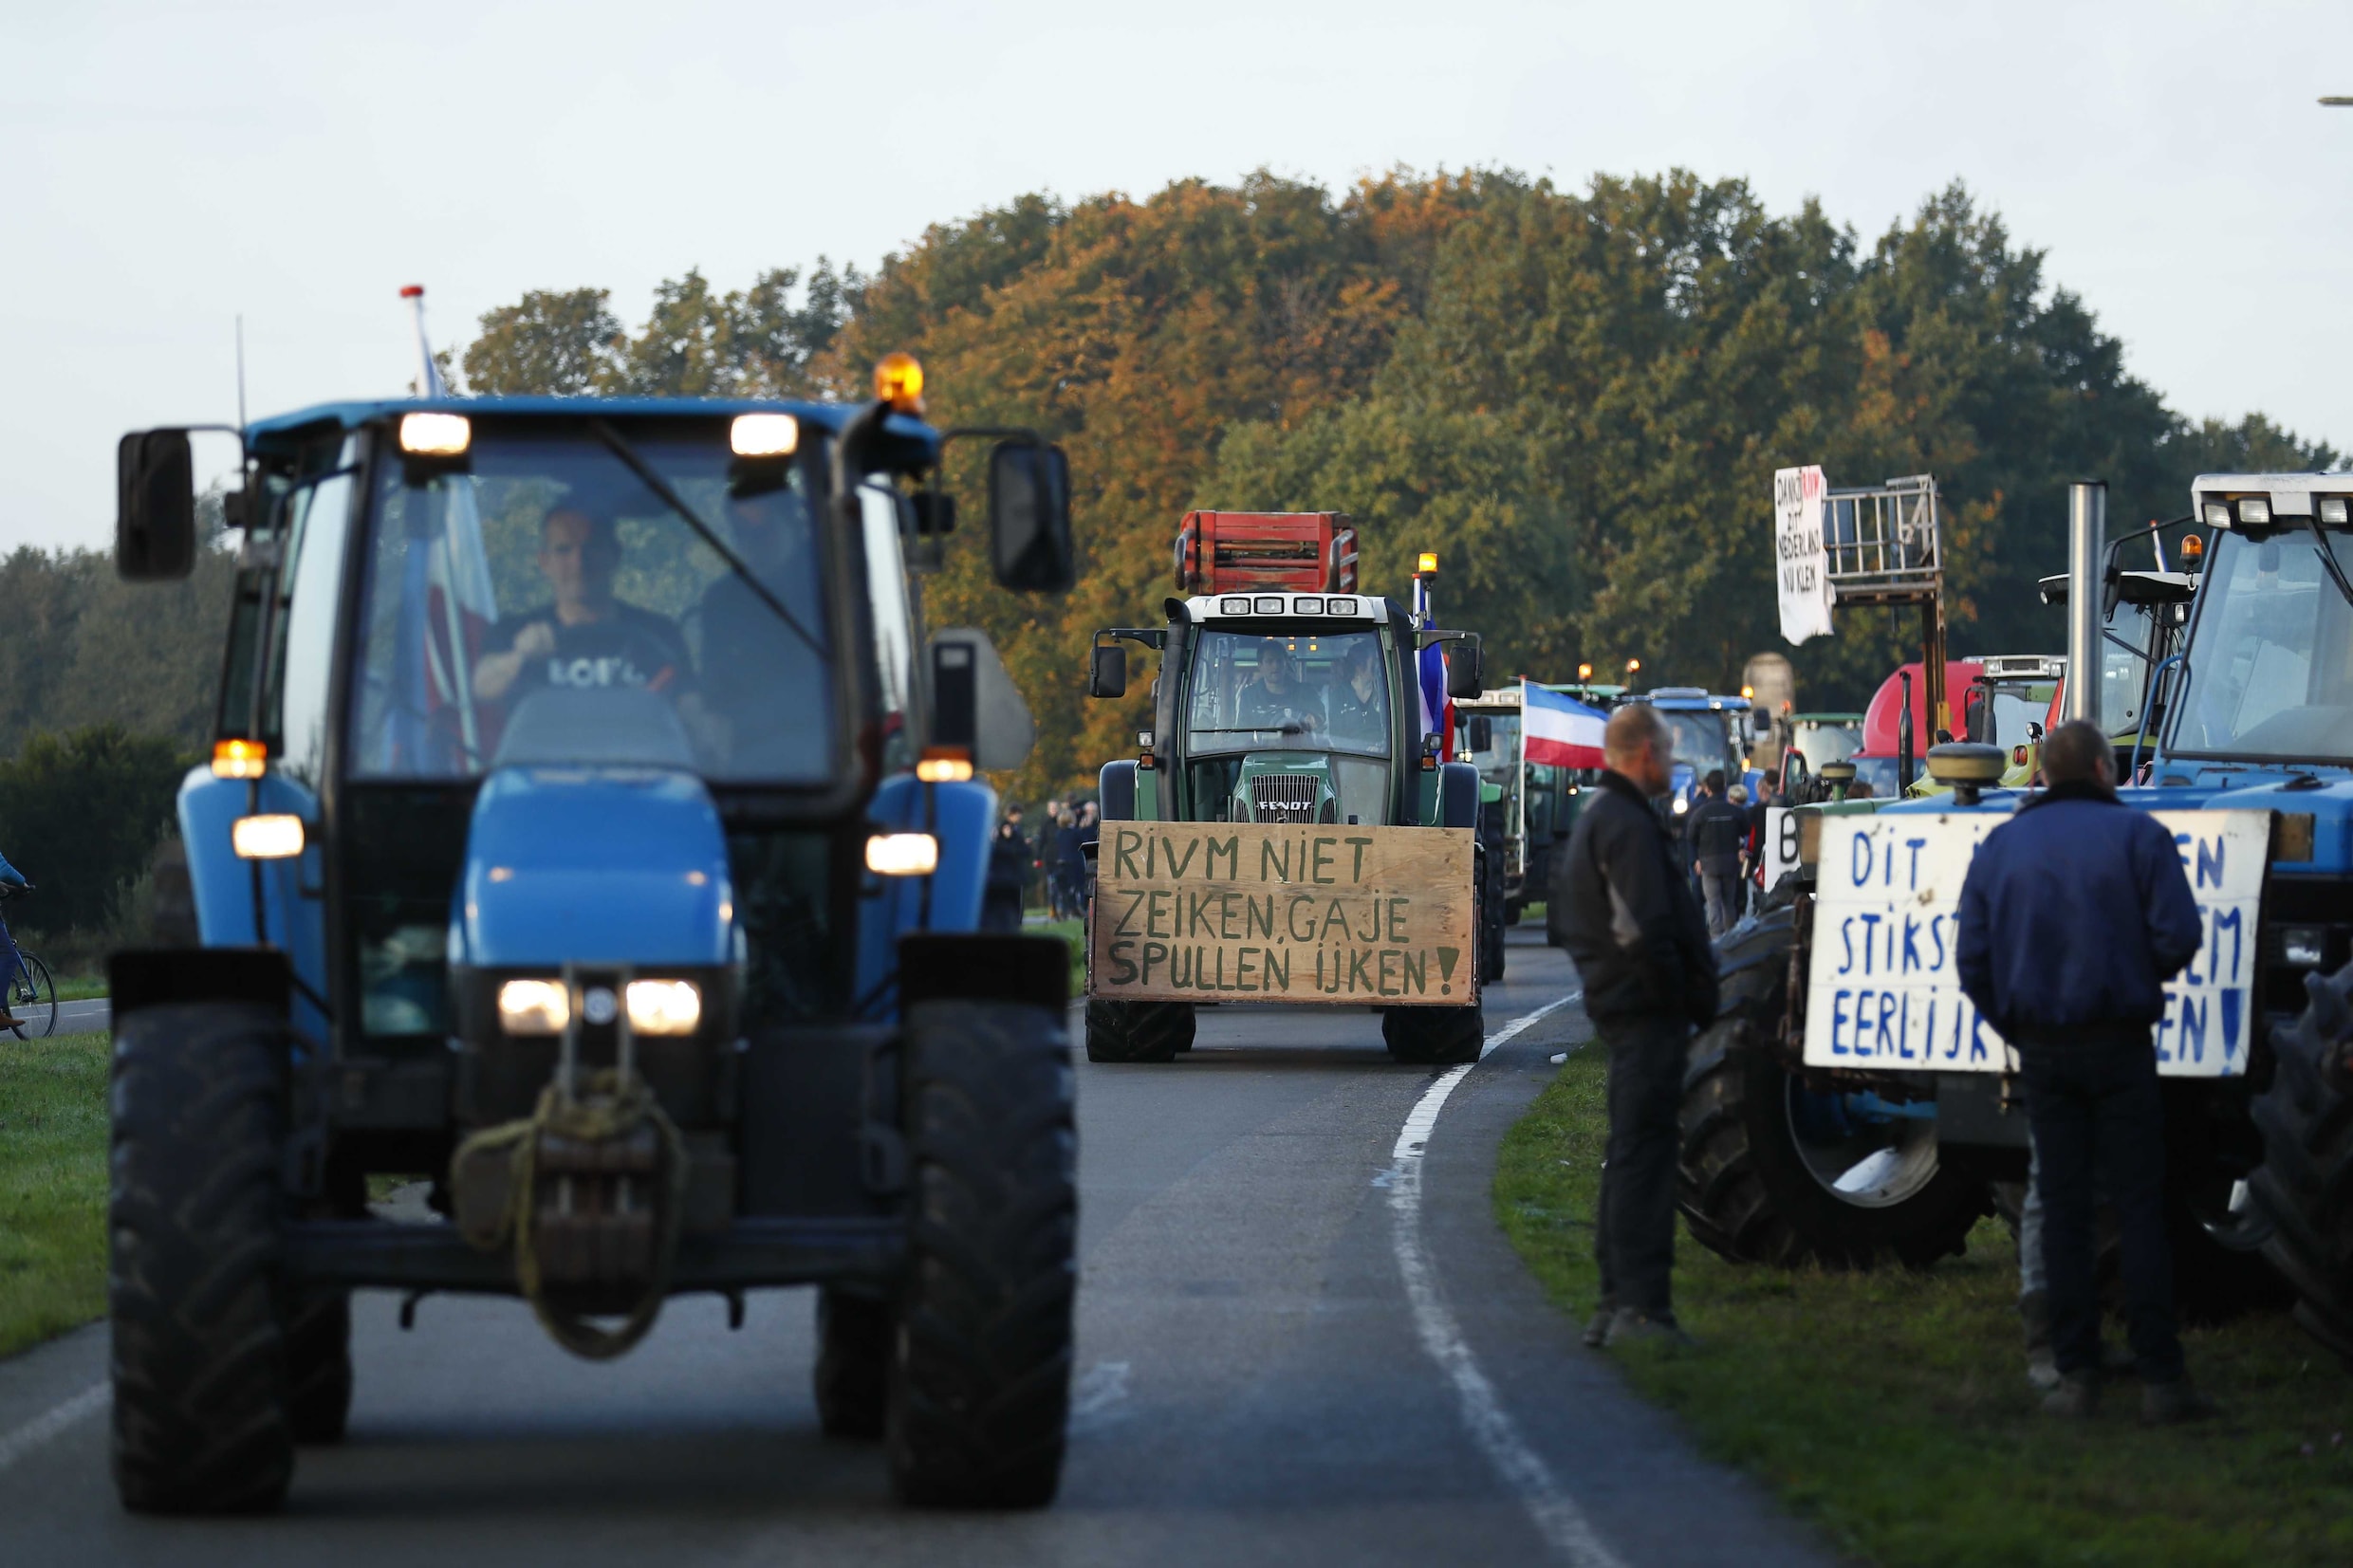 Ongeveer 400 kilometer file in Nederland door protest boeren